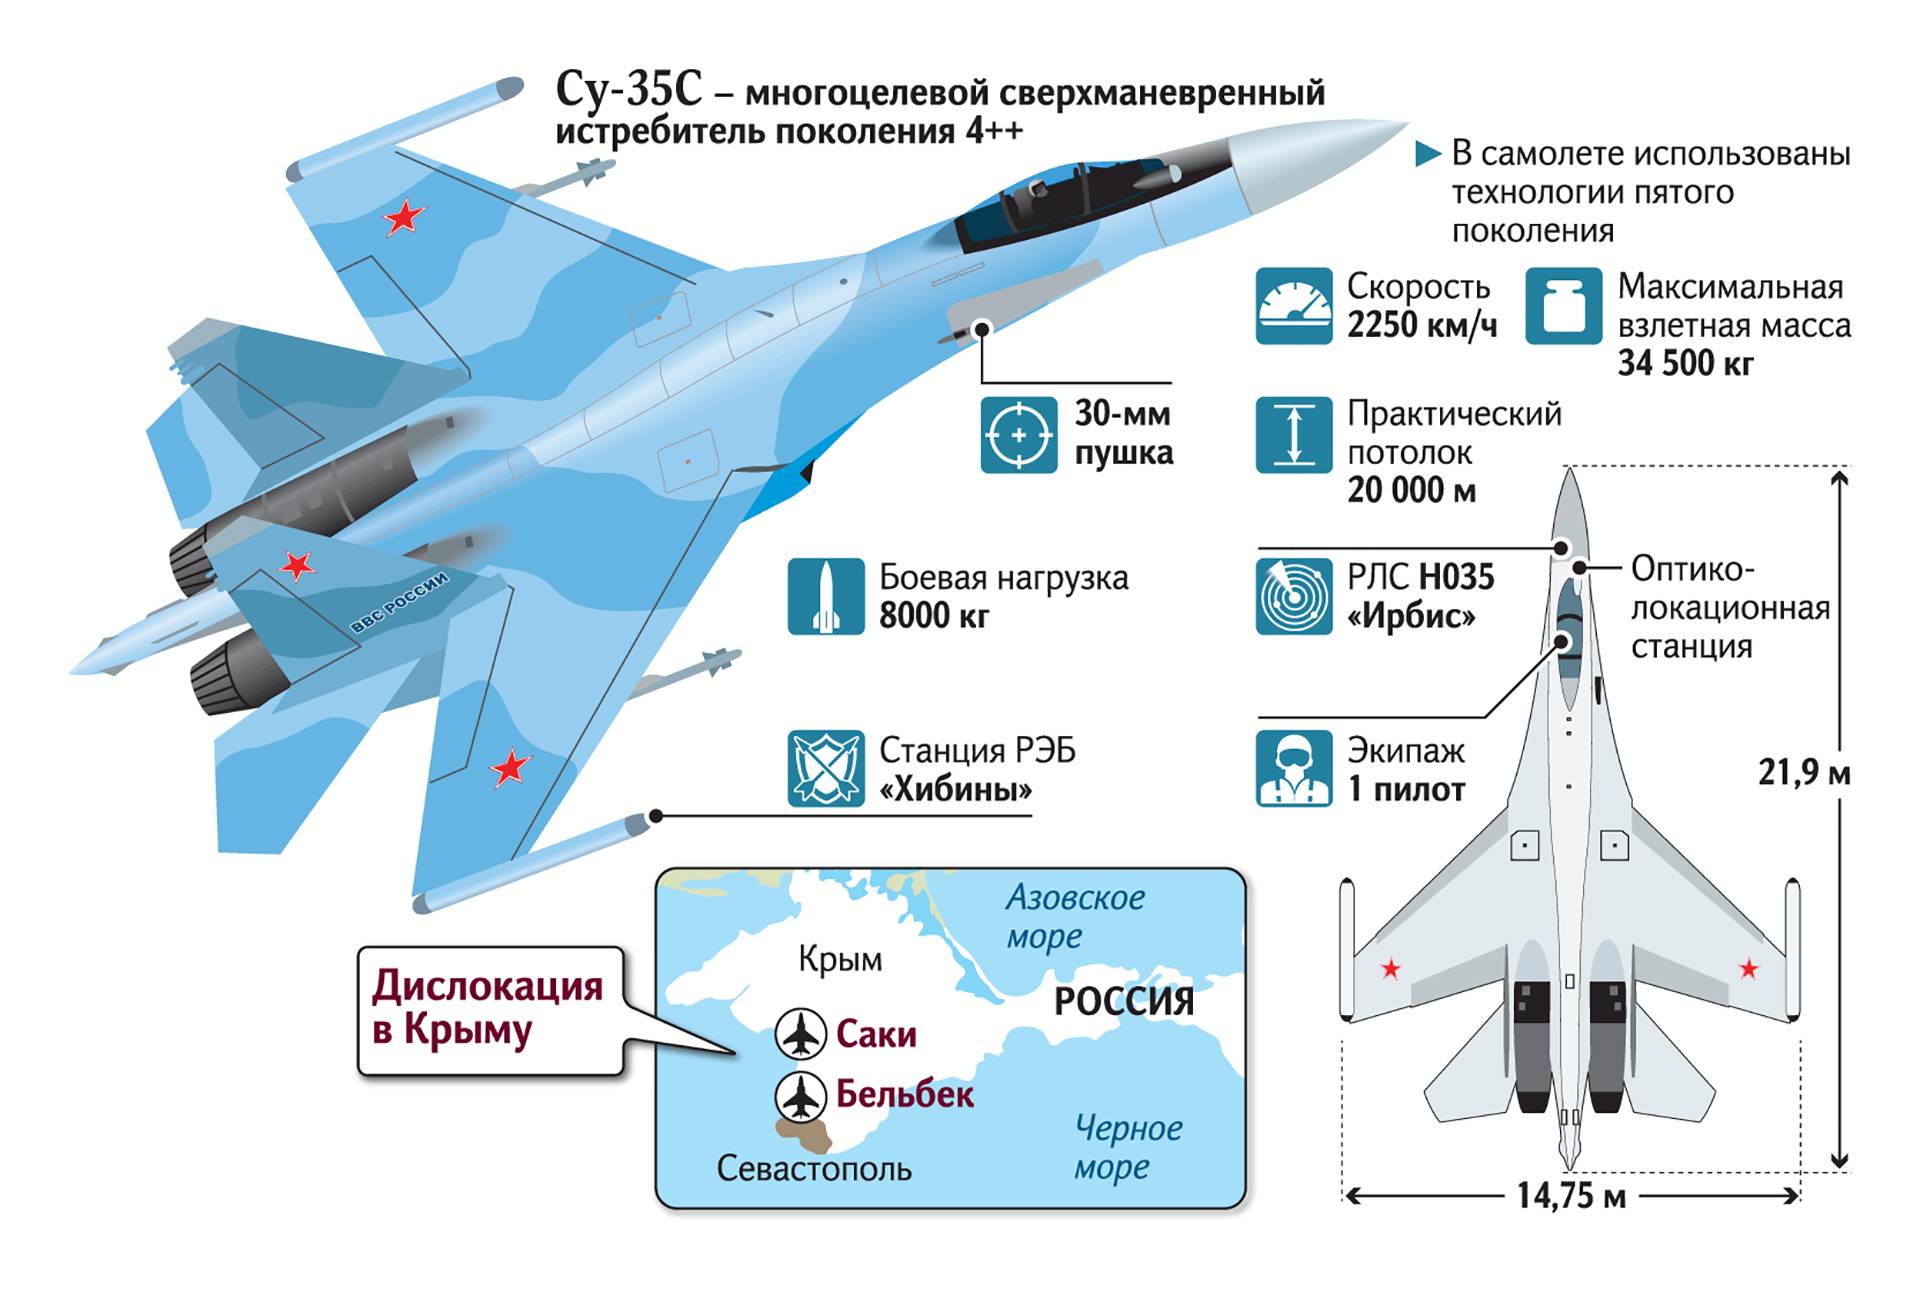 Миг-35. фото и видео, история, характеристики самолета